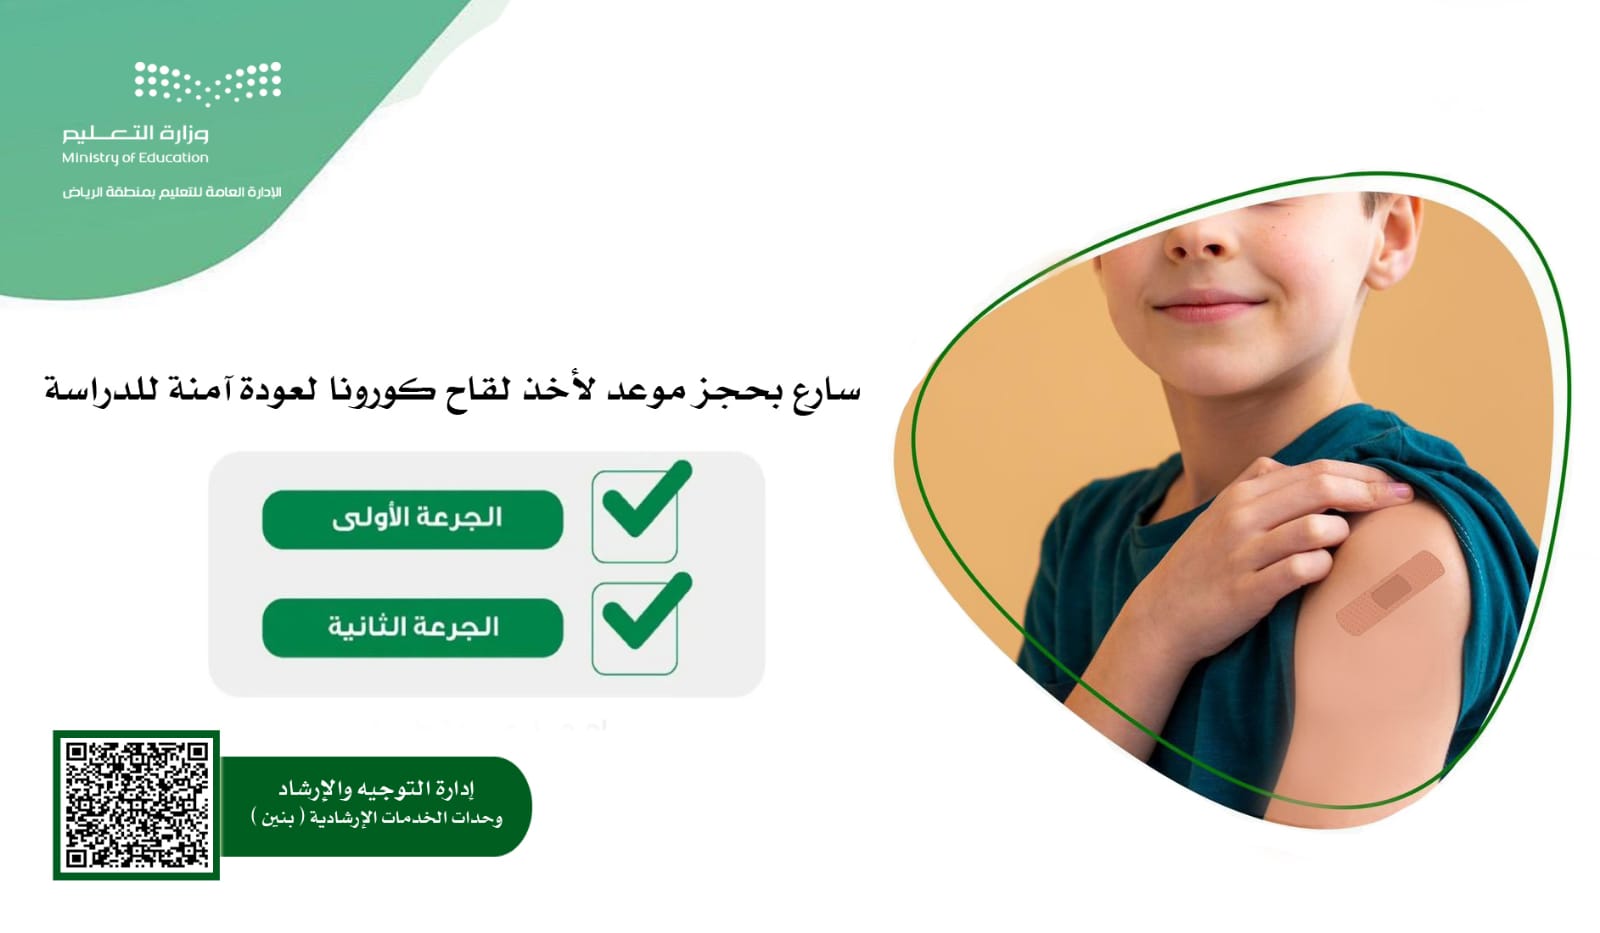 تعليم الرياض: سارعوا بحجز لقاح كورونا لأبنائكم لعودة آمنة للدراسة